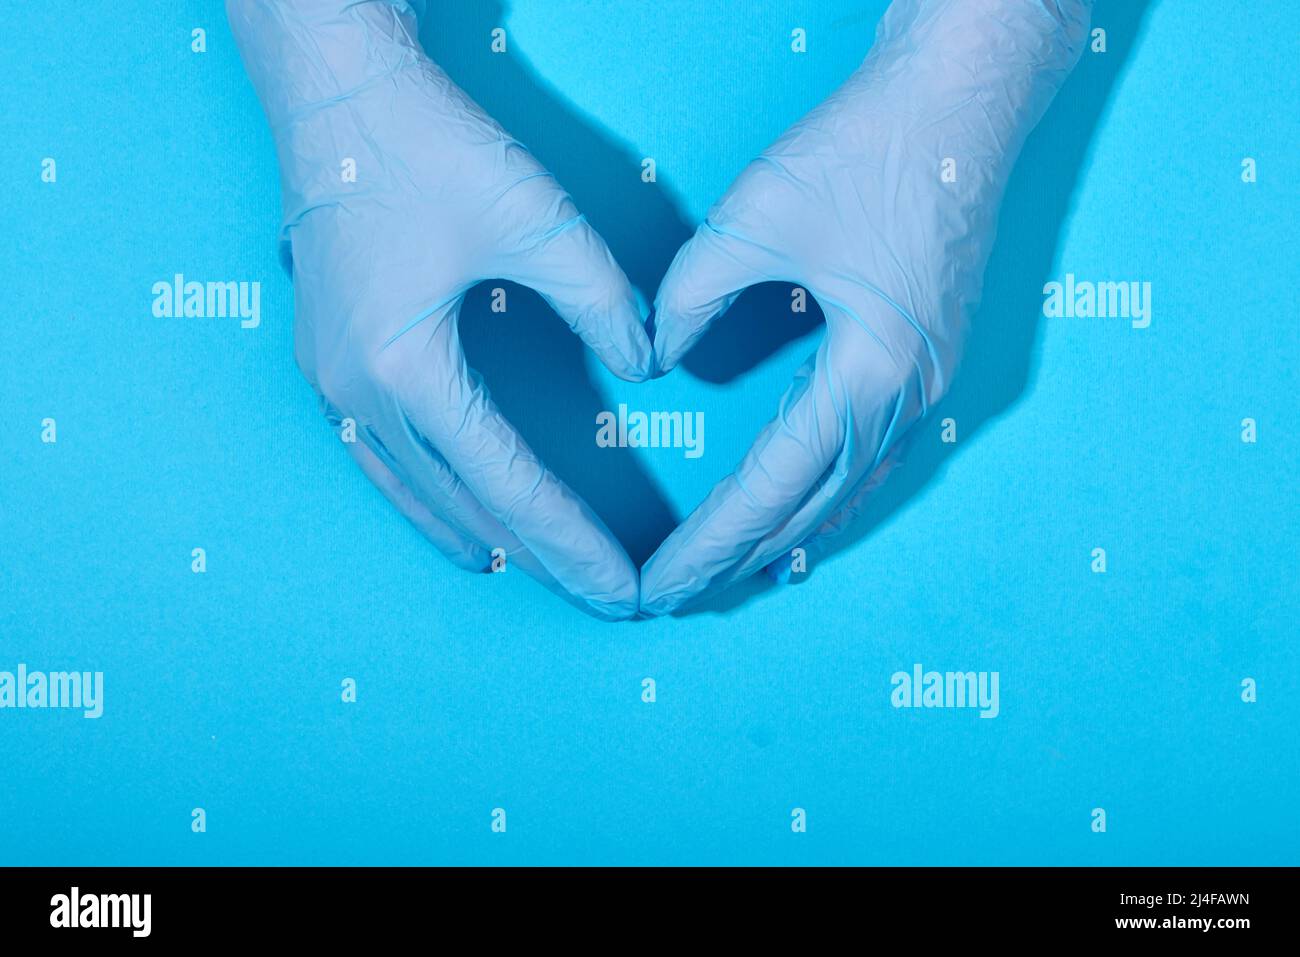 Las manos en guantes de látex de caucho yacen en la forma de un signo de corazón sobre un fondo azul con sombras claras Foto de stock